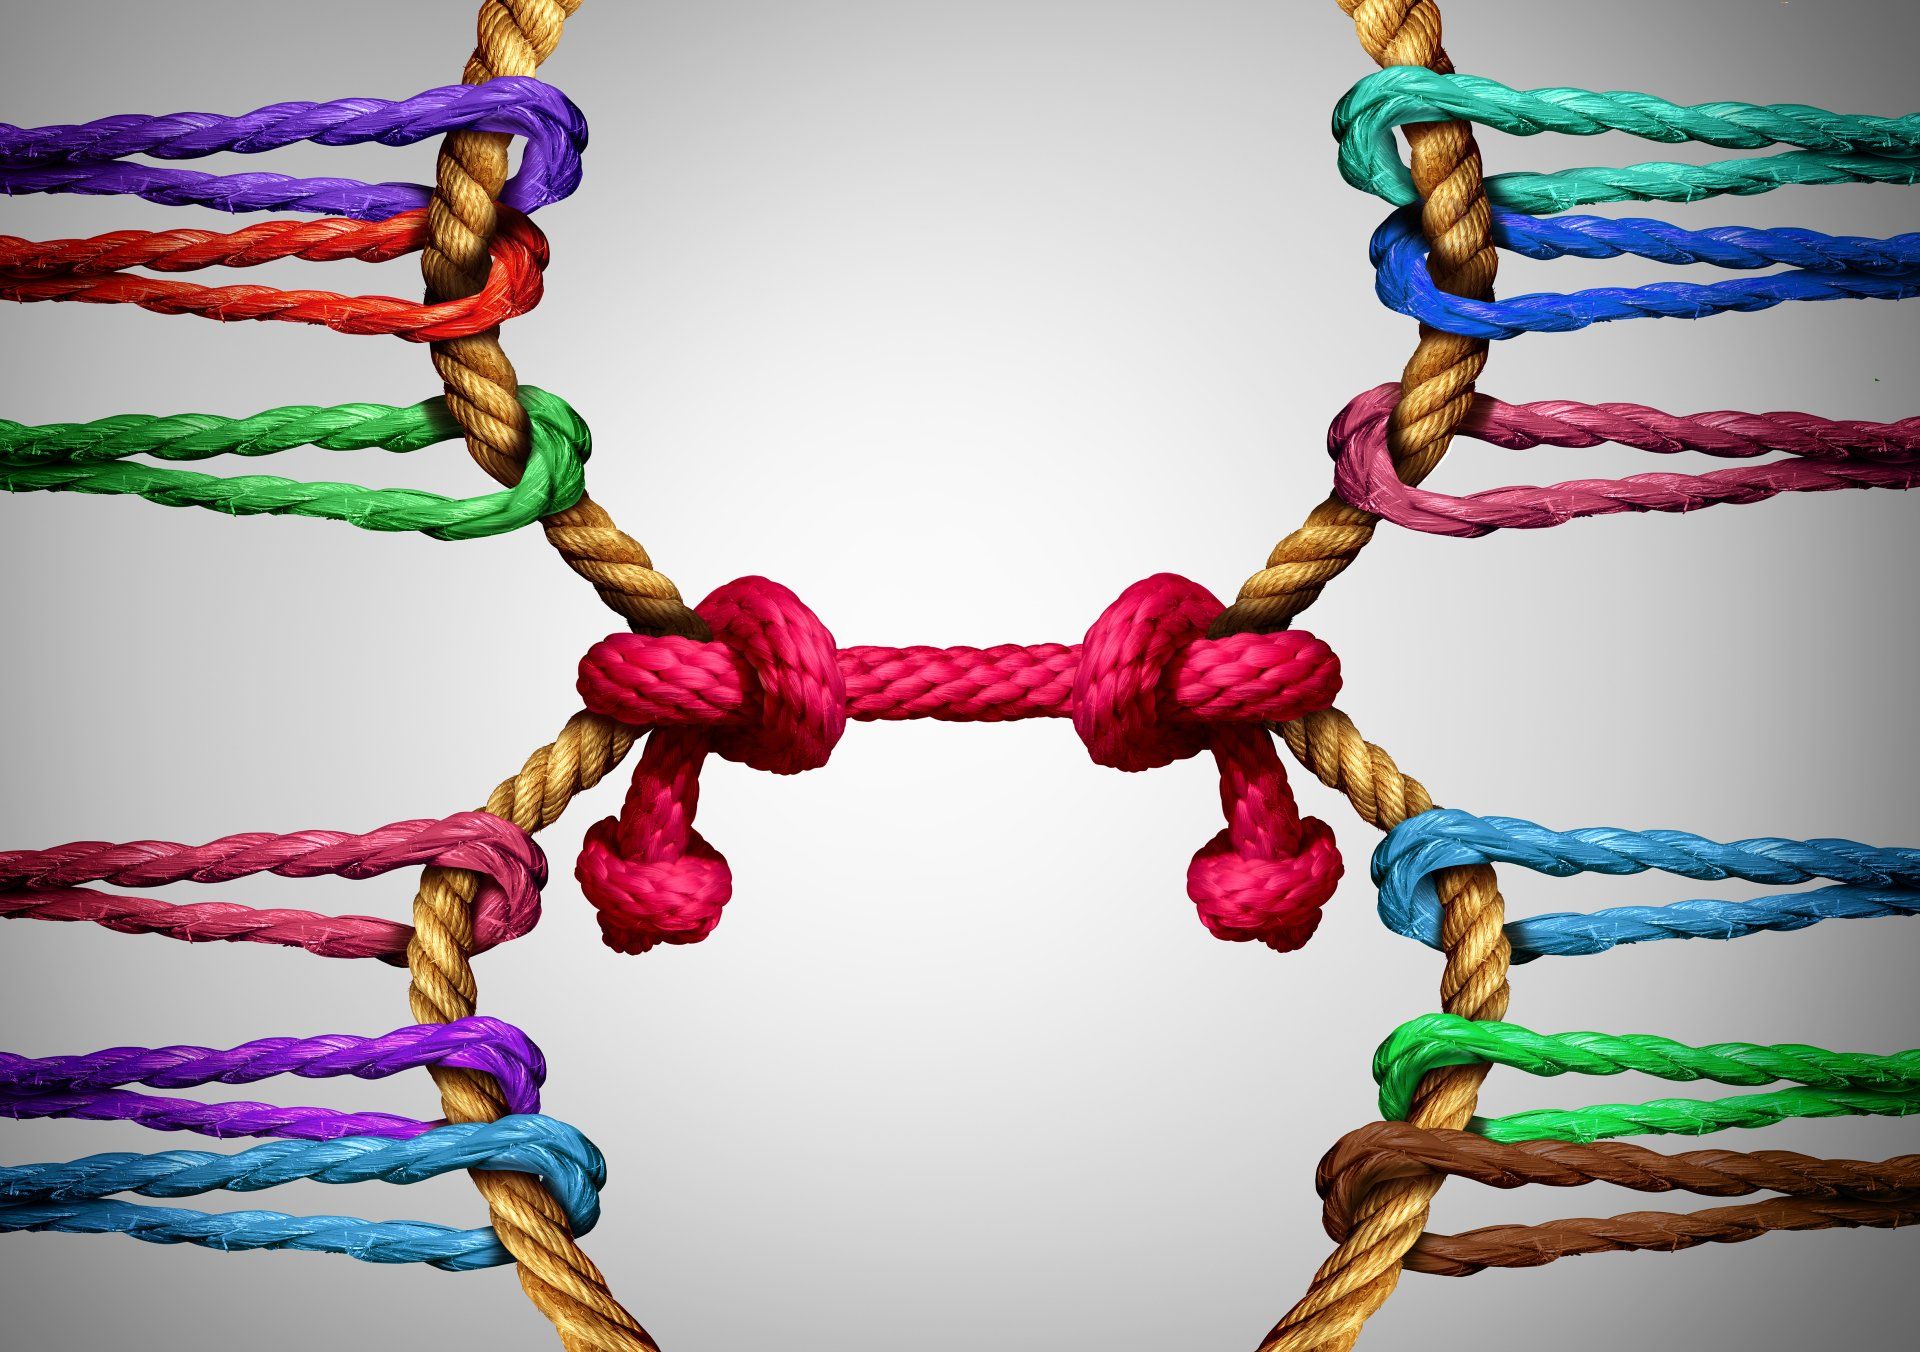 een touw als 8 vorm met daarom heen allemaal touwkleuren eraan verbonden.